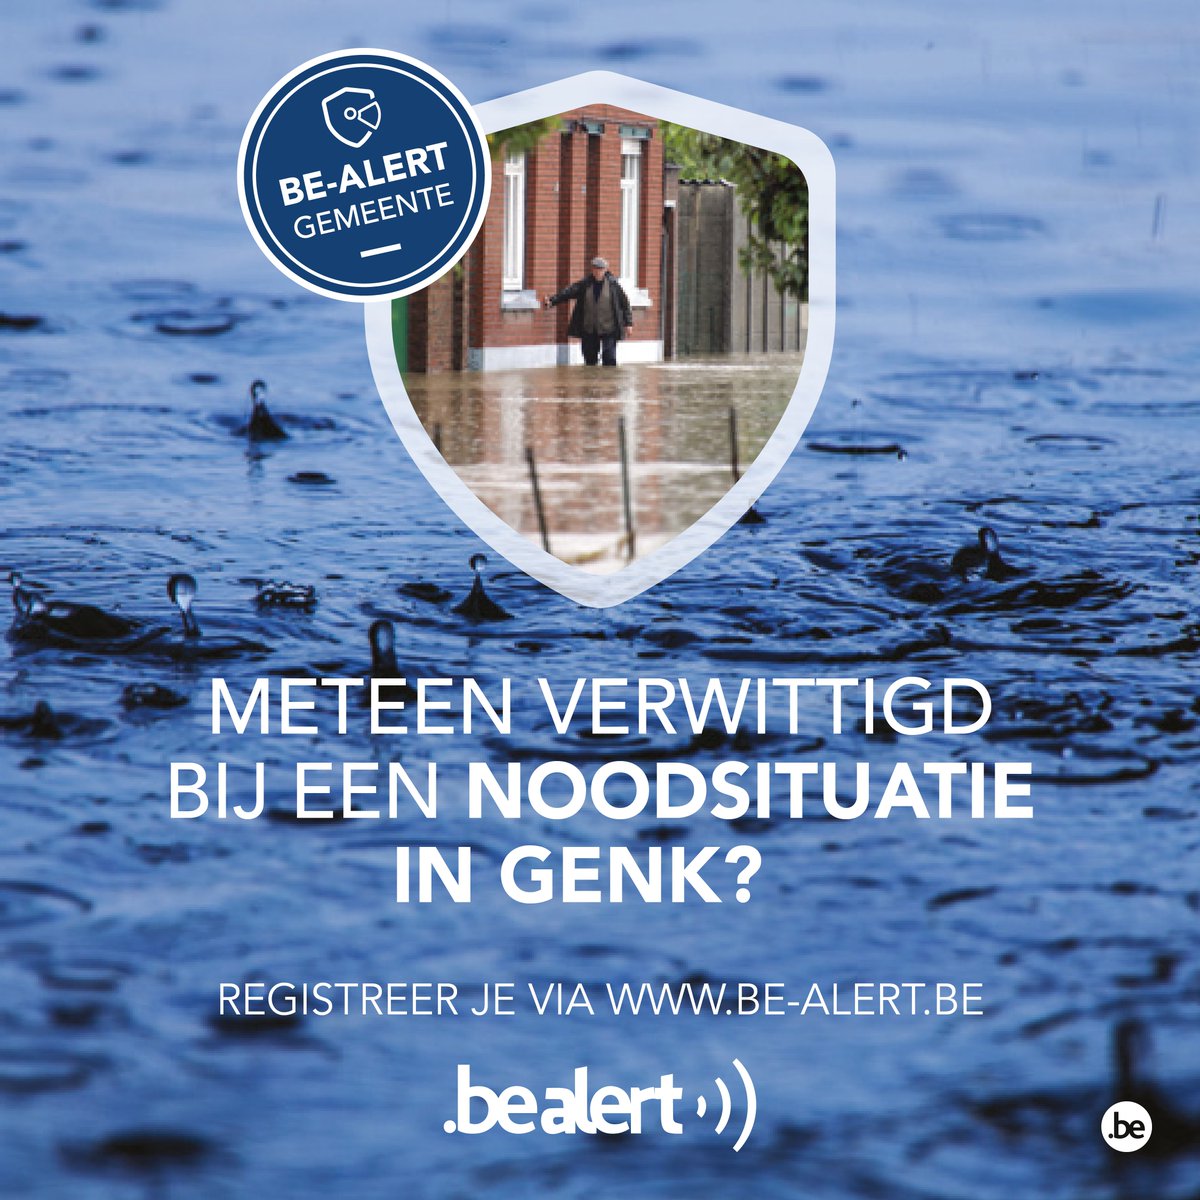 Op donderdag 5 oktober testen we #BEAlert. Wil je meteen verwittigd worden bij een noodsituatie in Genk? – Schrijf je vandaag nog in via be-alert.be